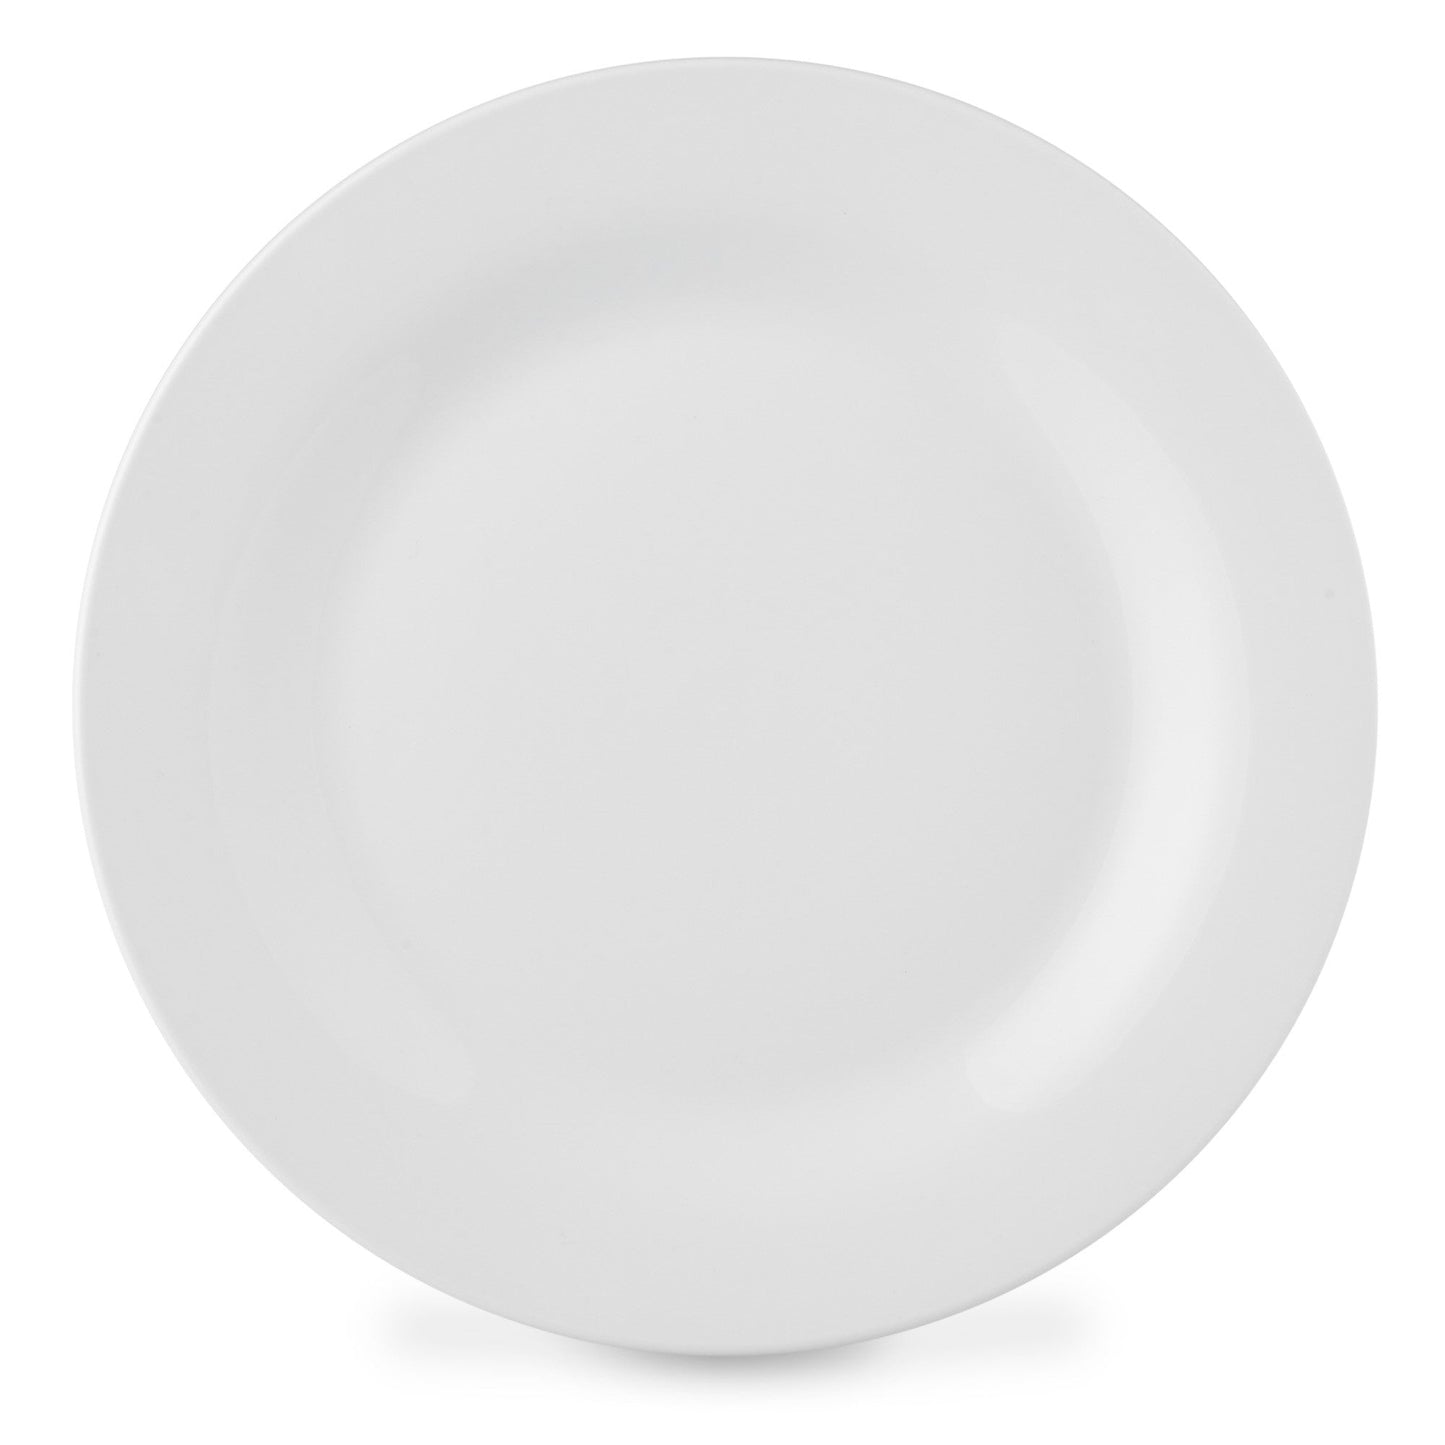 Lewis's 16 Piece Dinner Set - Plain Arctic White